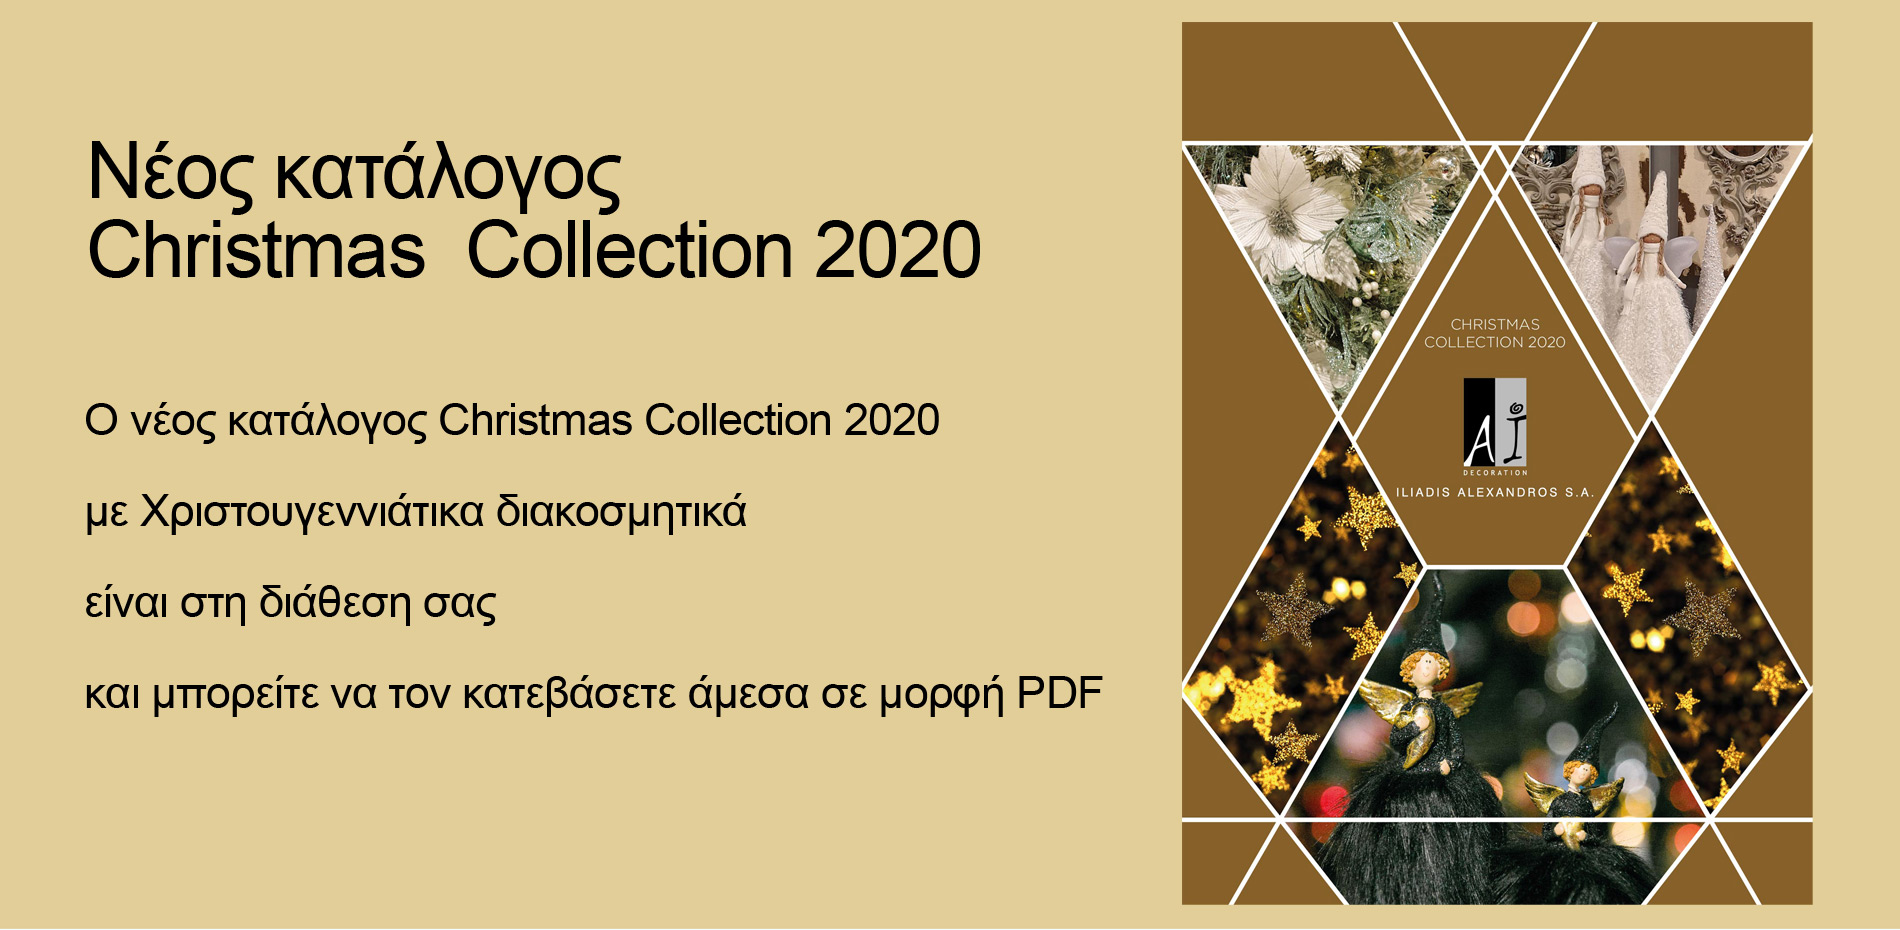 Νέος κατάλογος Christmas  Collection 2020